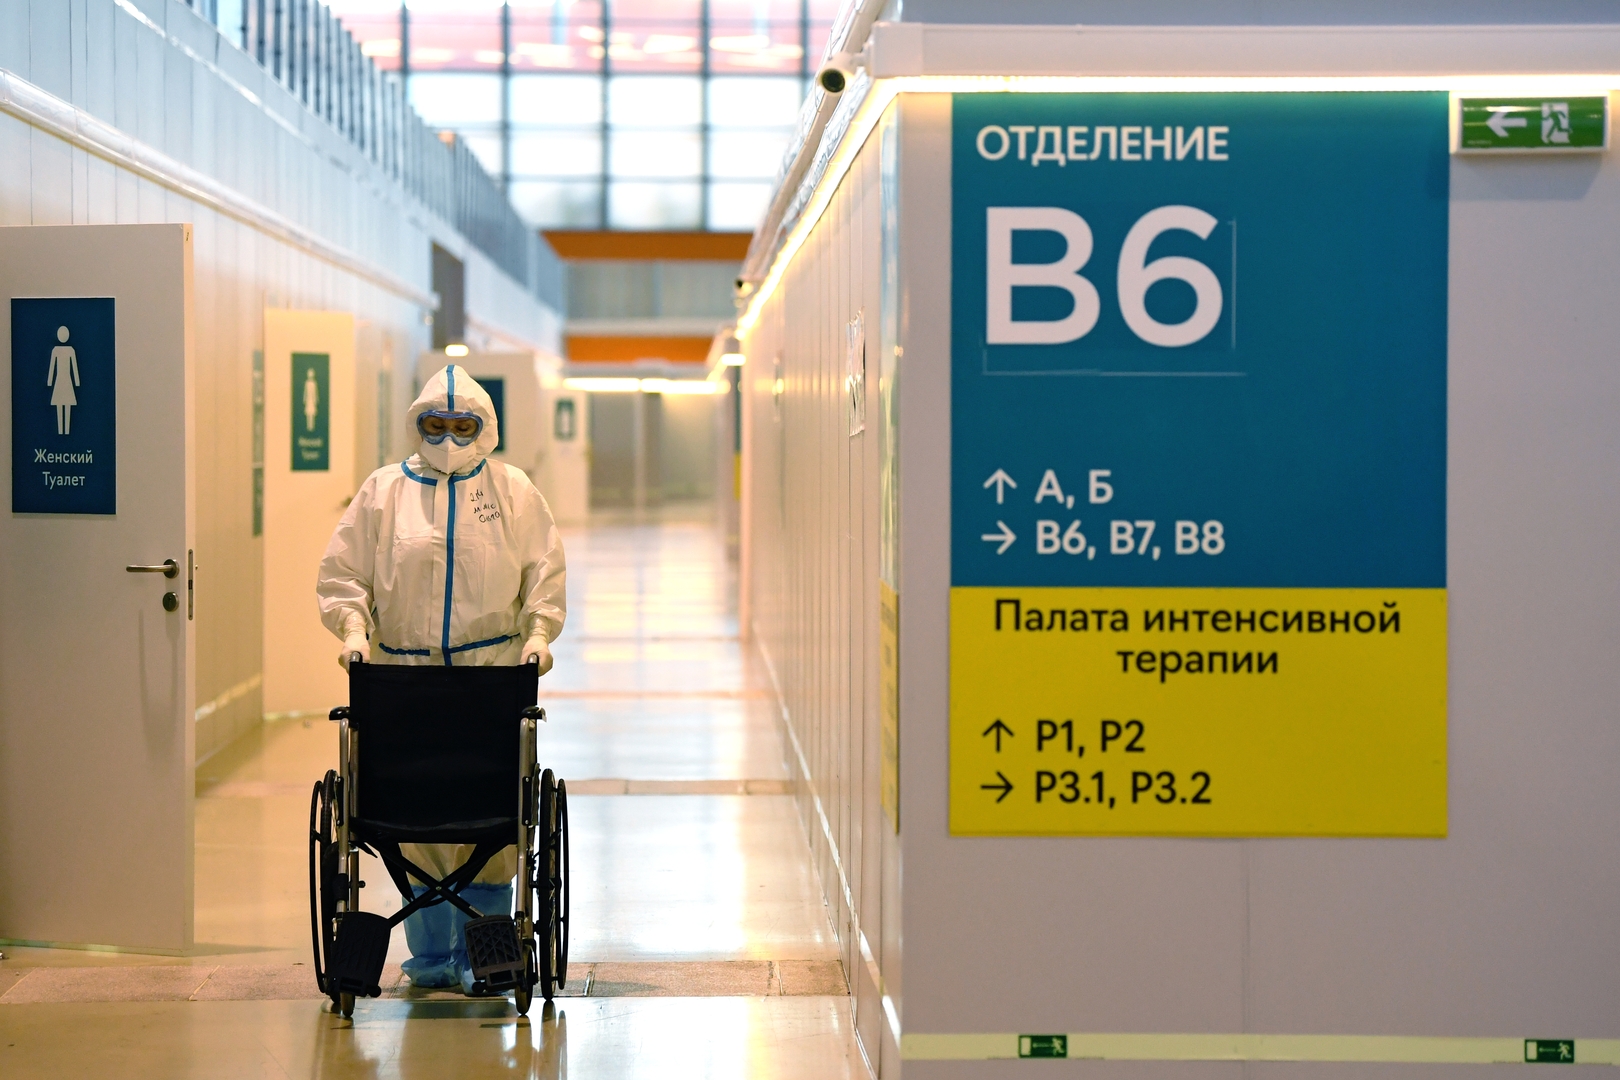 لأول مرة وفيات كورونا تتجاوز ألف حالة في يوم واحد منذ انتشار الوباء في روسيا